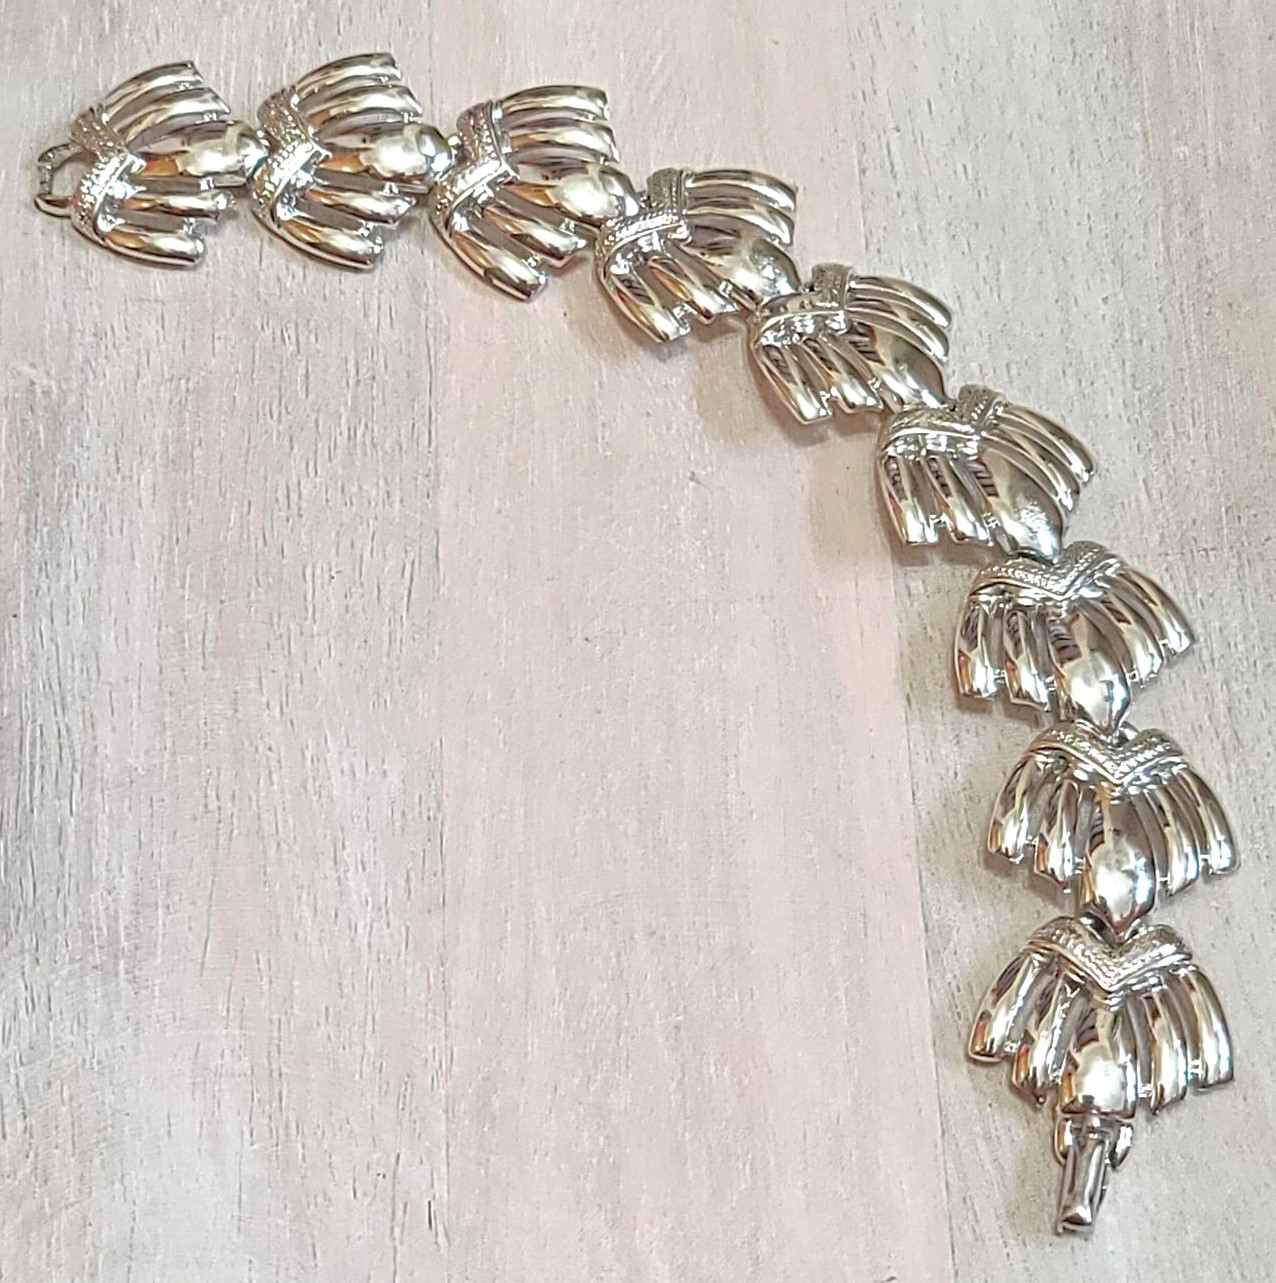 Vintage shell link bracelet, signed designer CORO, high polished silver